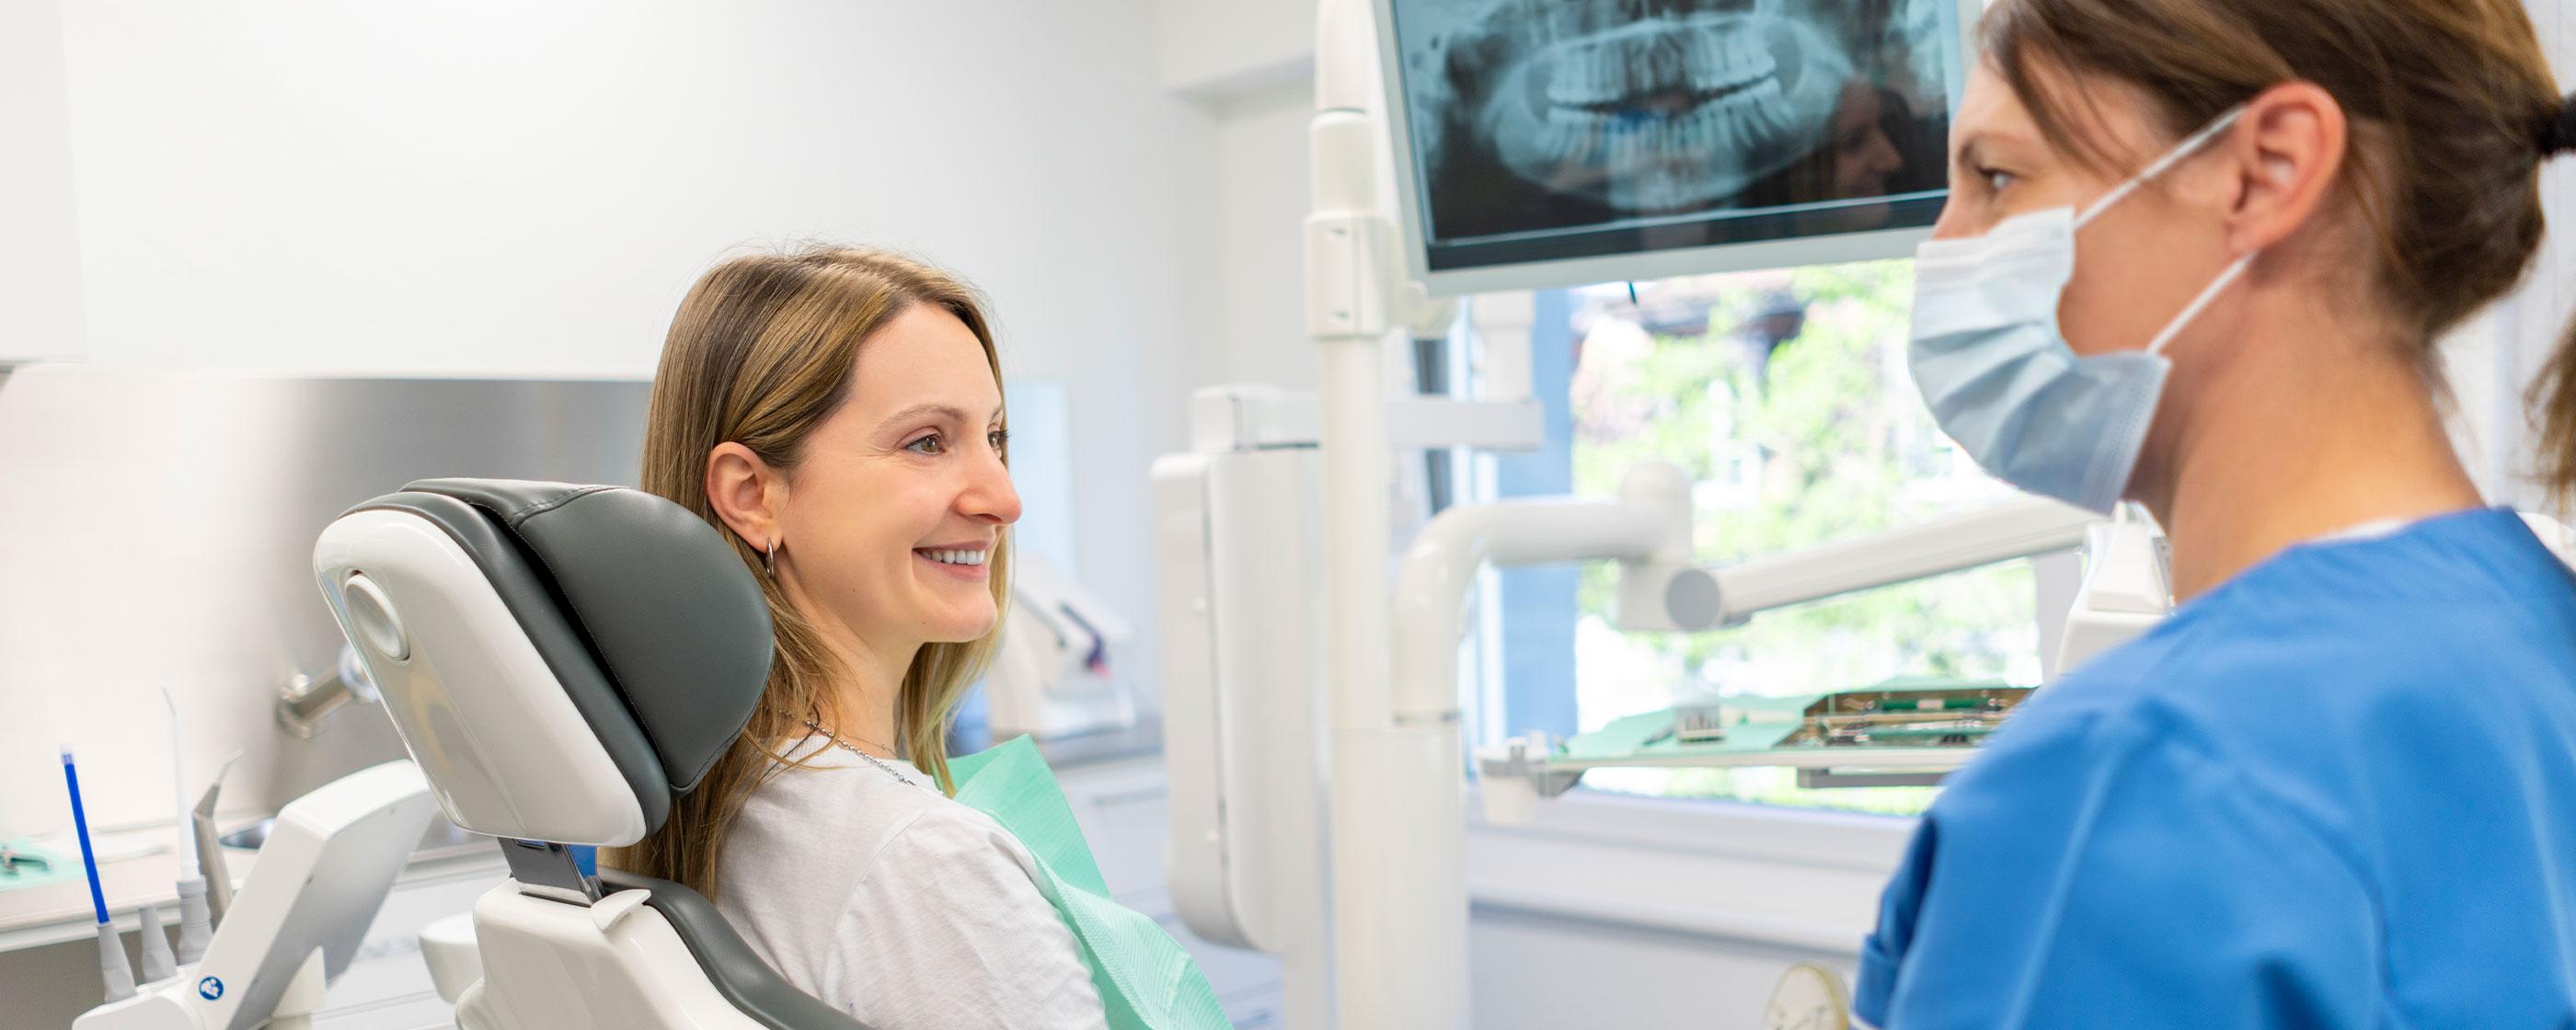 Zahnarztklinik, Zahnärztin im Gespräch mit Patientin